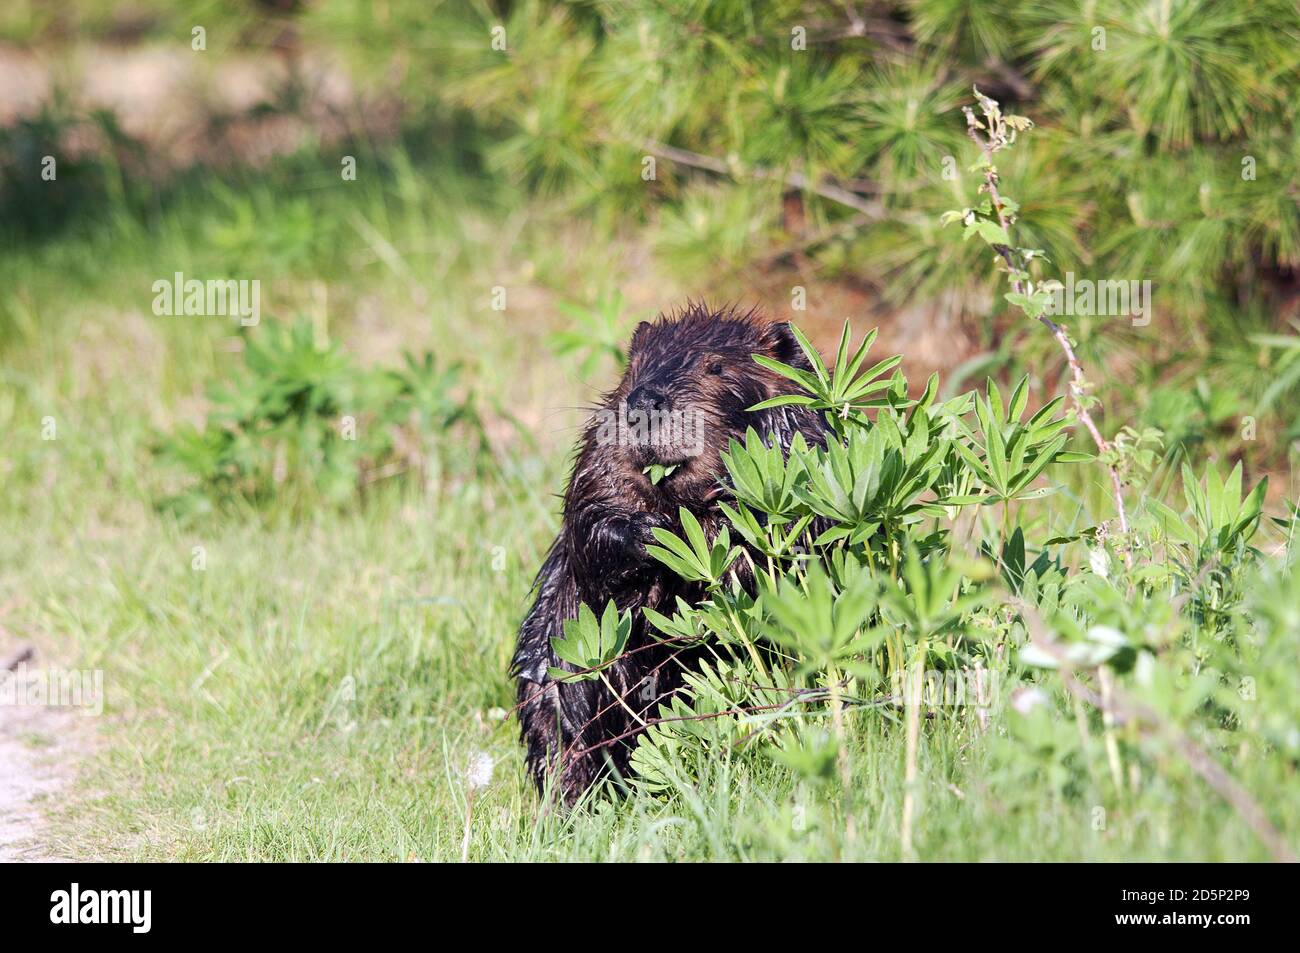 Biberkopf Nahaufnahme Profil Ansicht versteckt hinter Laub und Blätter mit braunem Fell, Kopf, nasses Fell in seinem Lebensraum und Umgebung. Beaver-Bild. Stockfoto